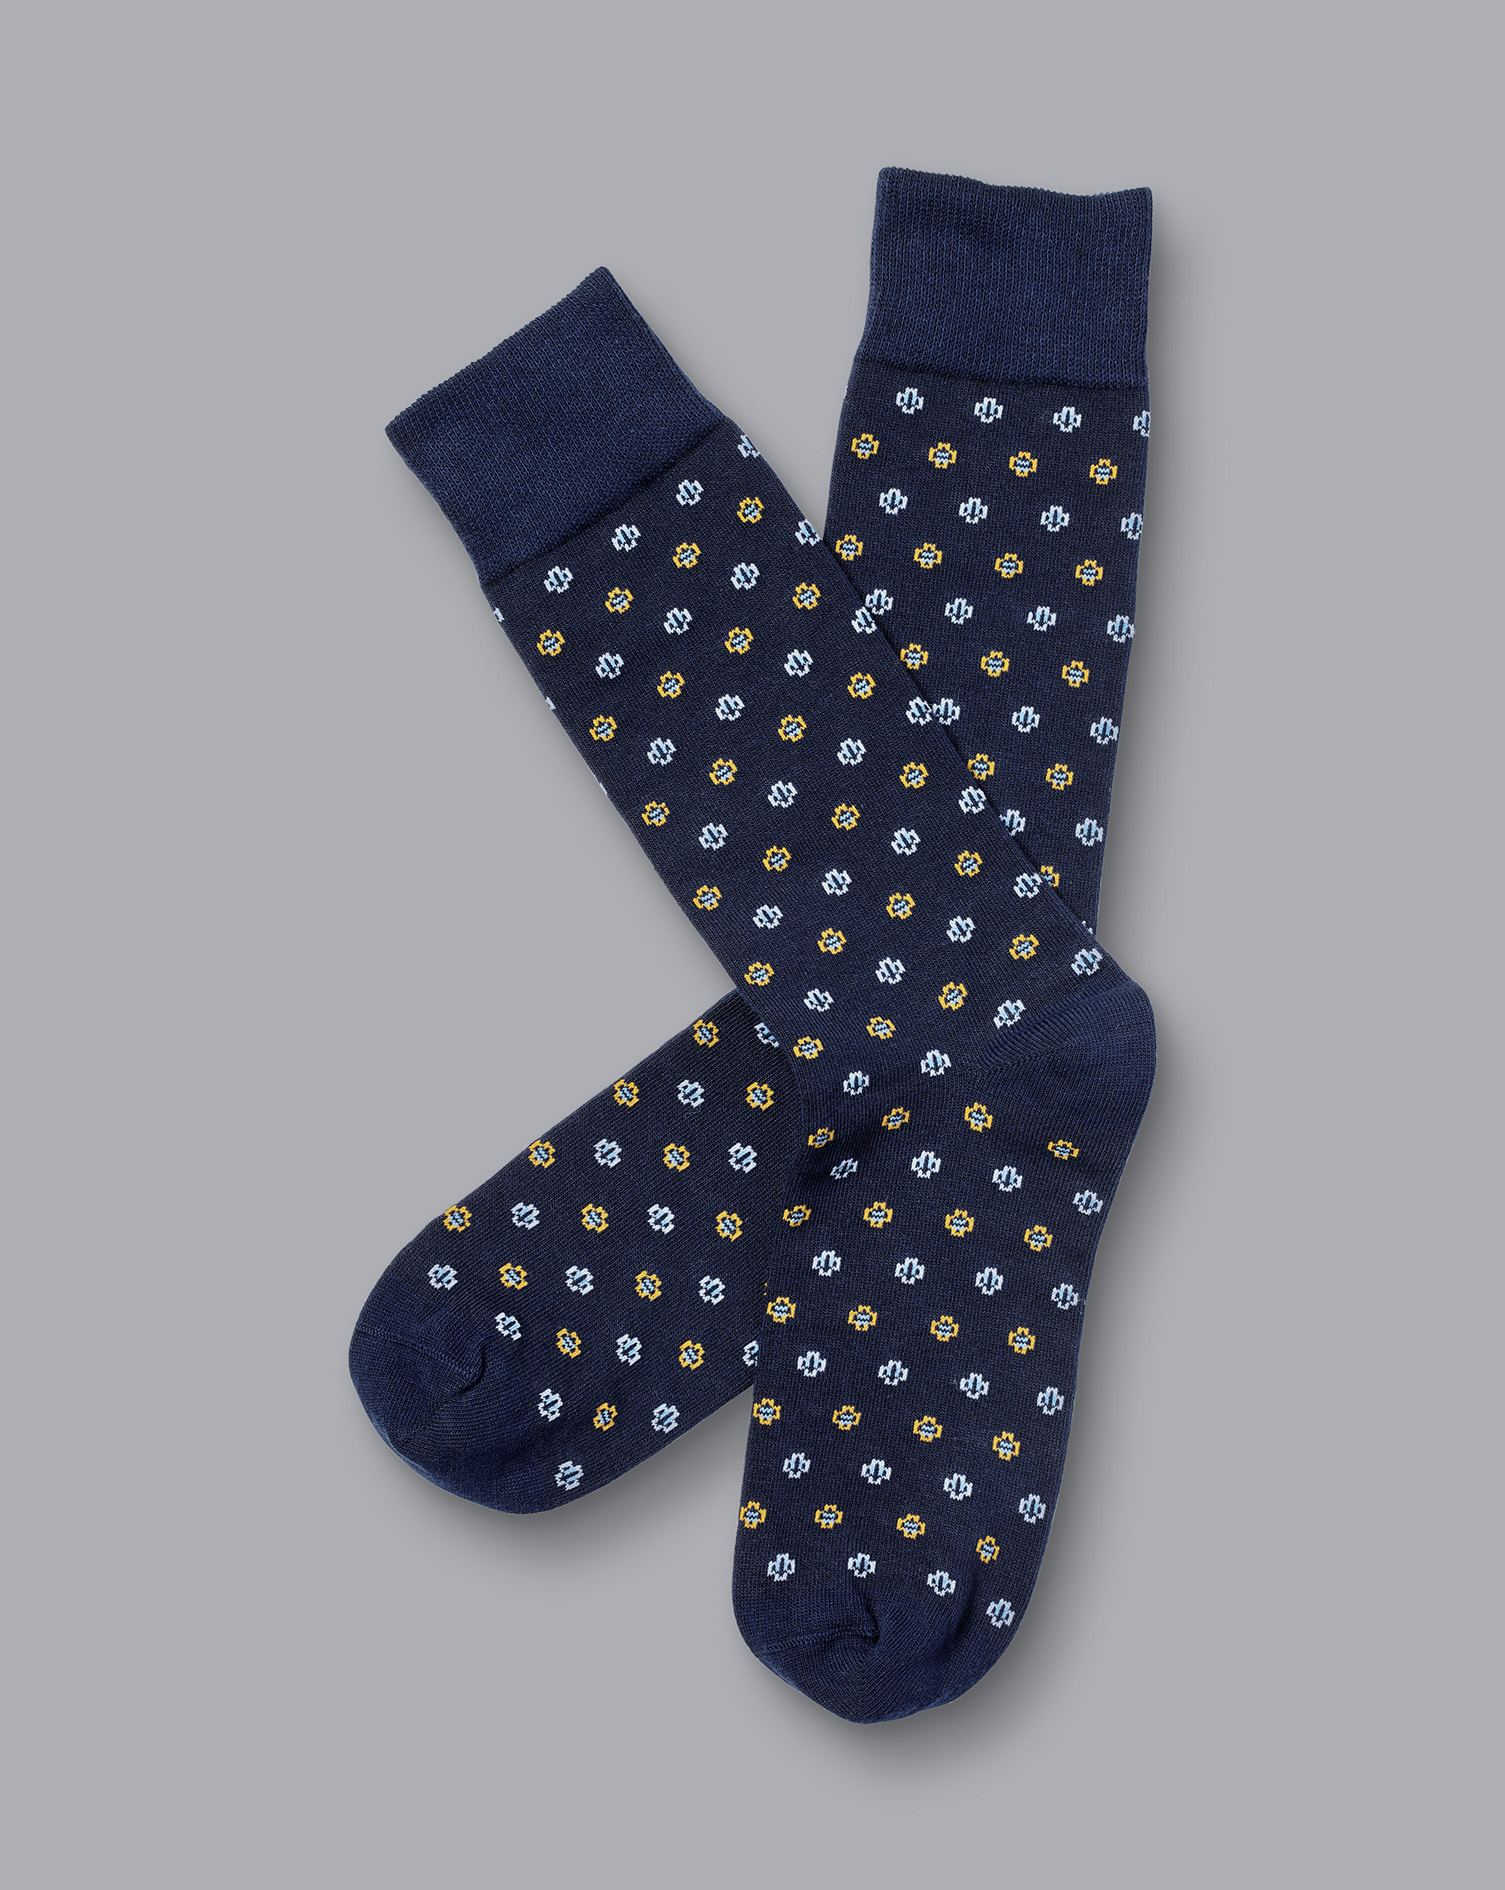 Men's Charles Tyrwhitt Geo Socks - Navy Blue Size 6-10
